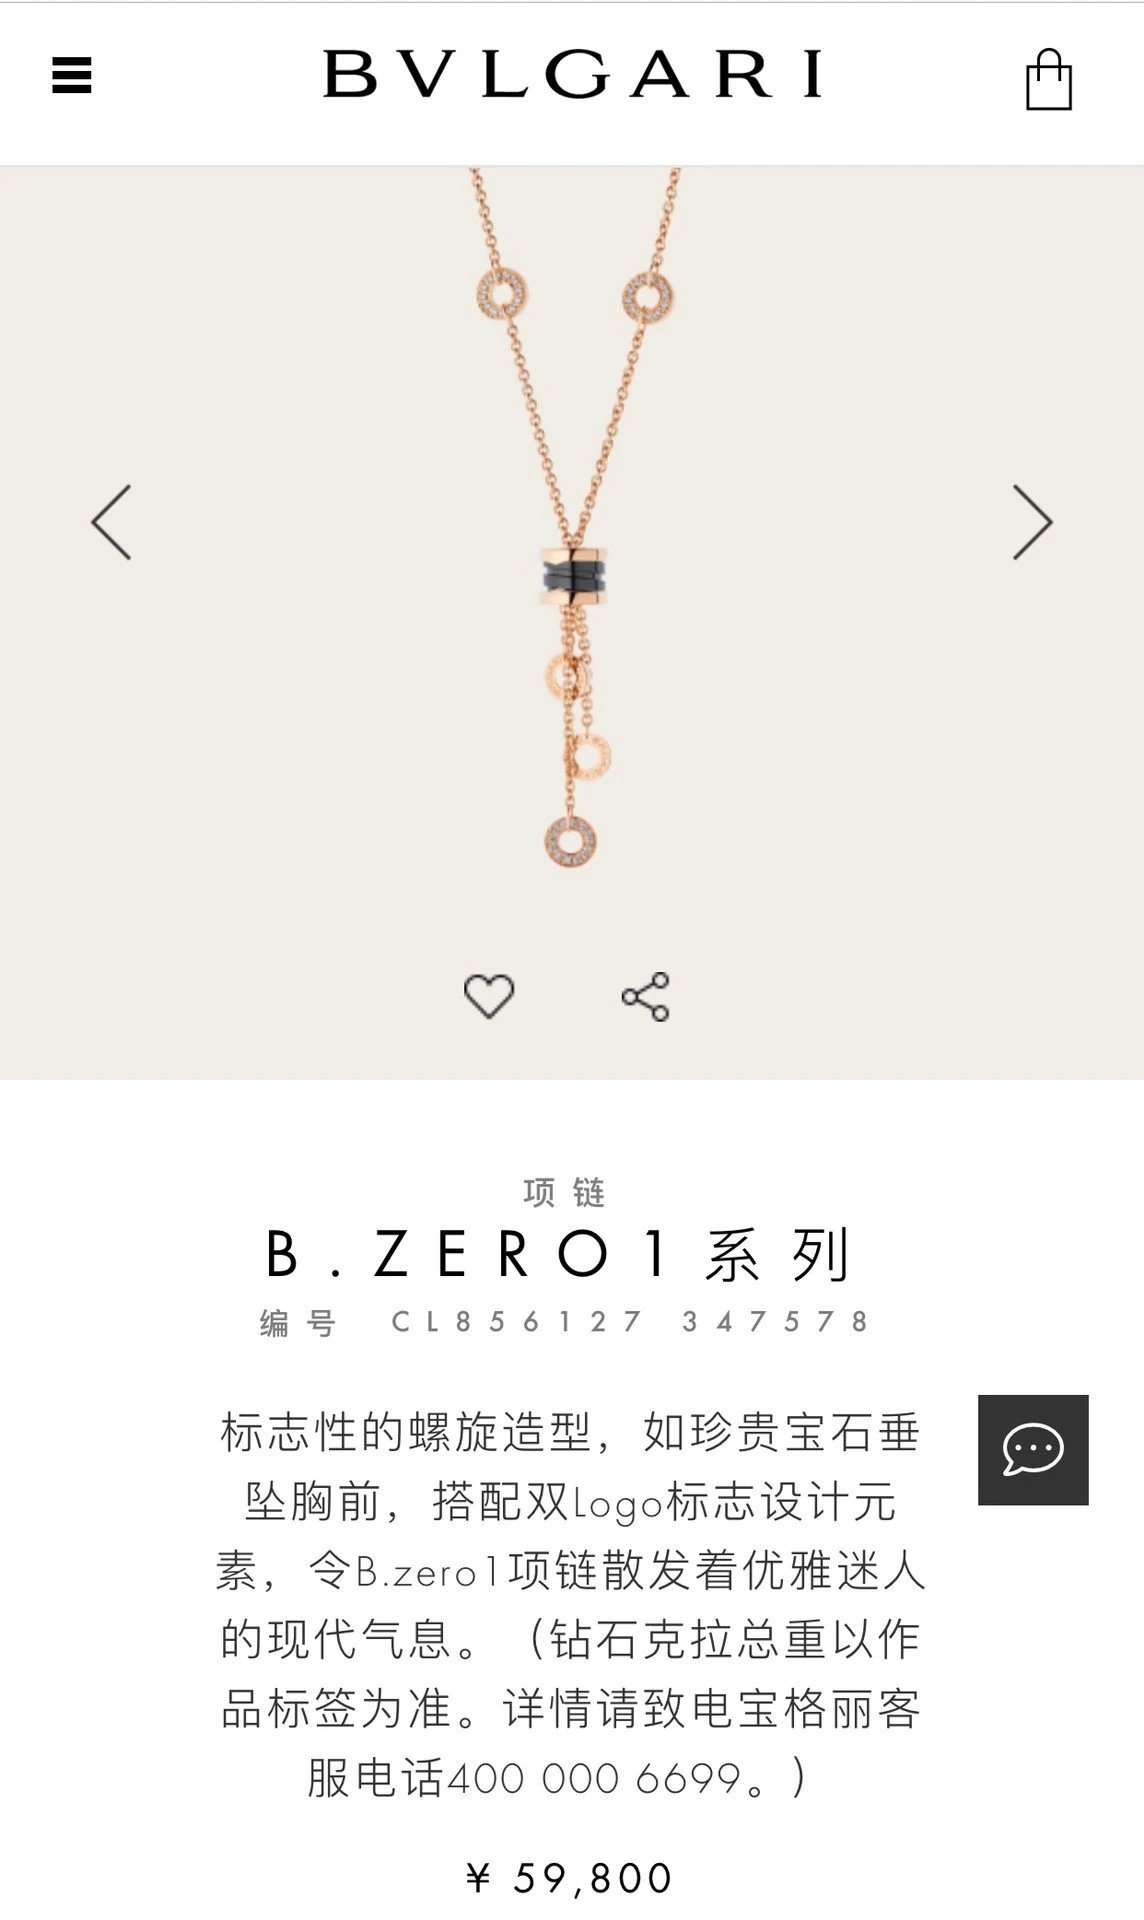 宝格丽流苏款 b.zero 1 系列的项链,渠道正品全国包邮